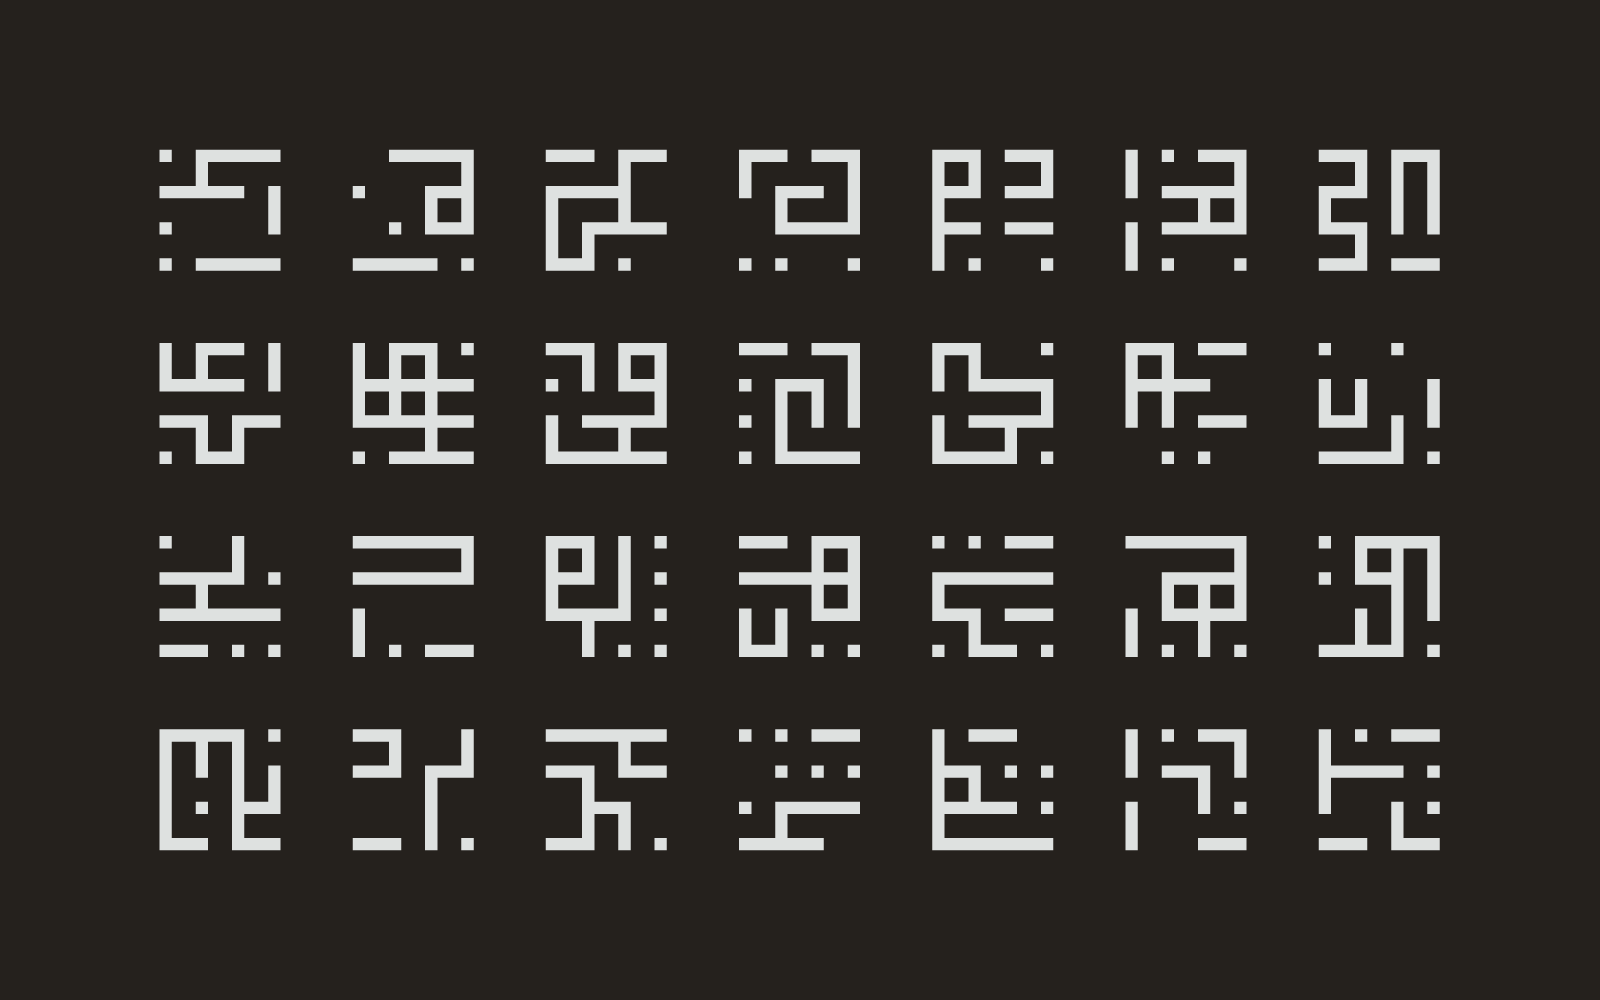 Processing Runes 1